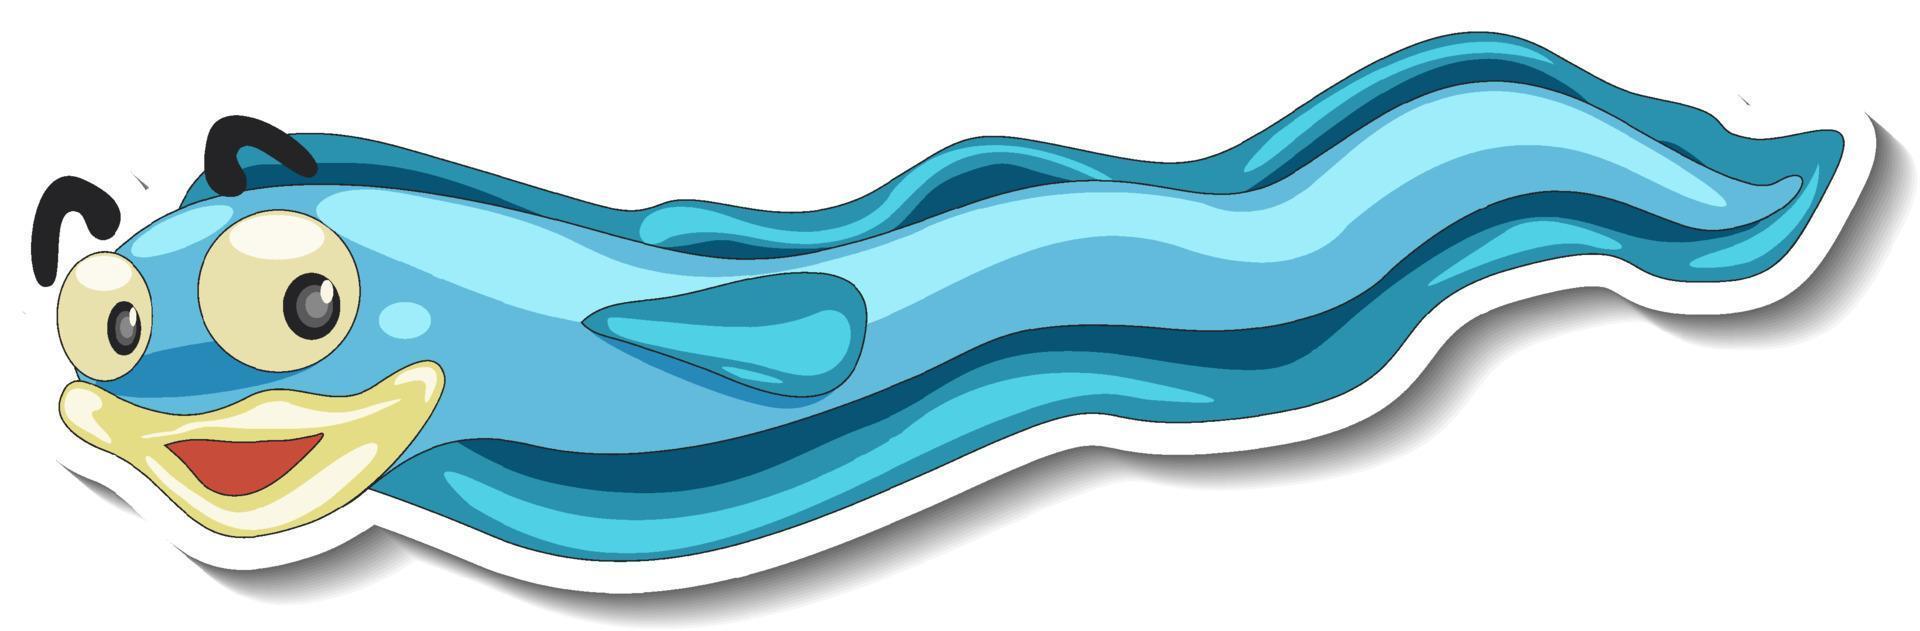 adesivo cartone animato animale anguilla di mare vettore